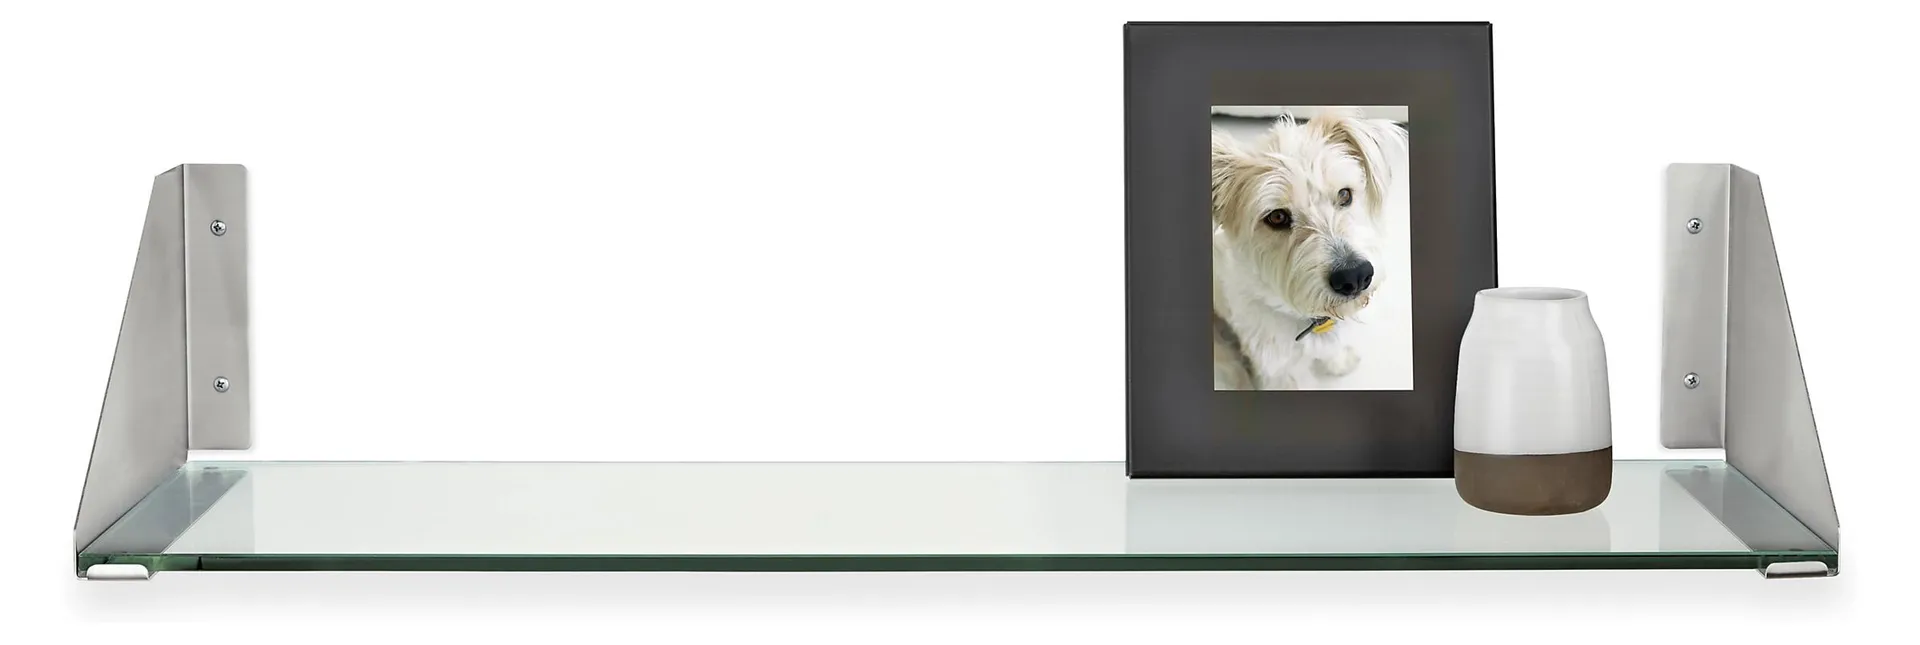 Bradbury 36w 10d 7.5h Wall Shelf in Stainless Steel with Clear Glass Shelf